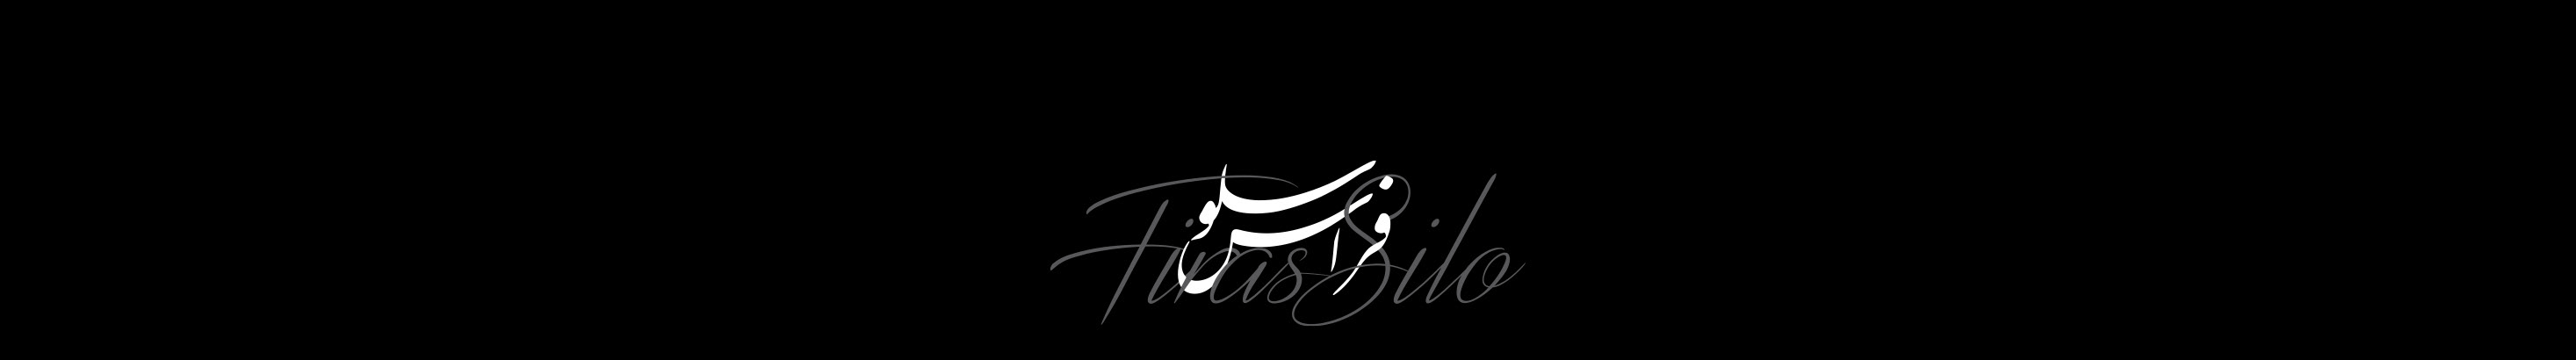 Firas Silo فراس سلو's profile banner